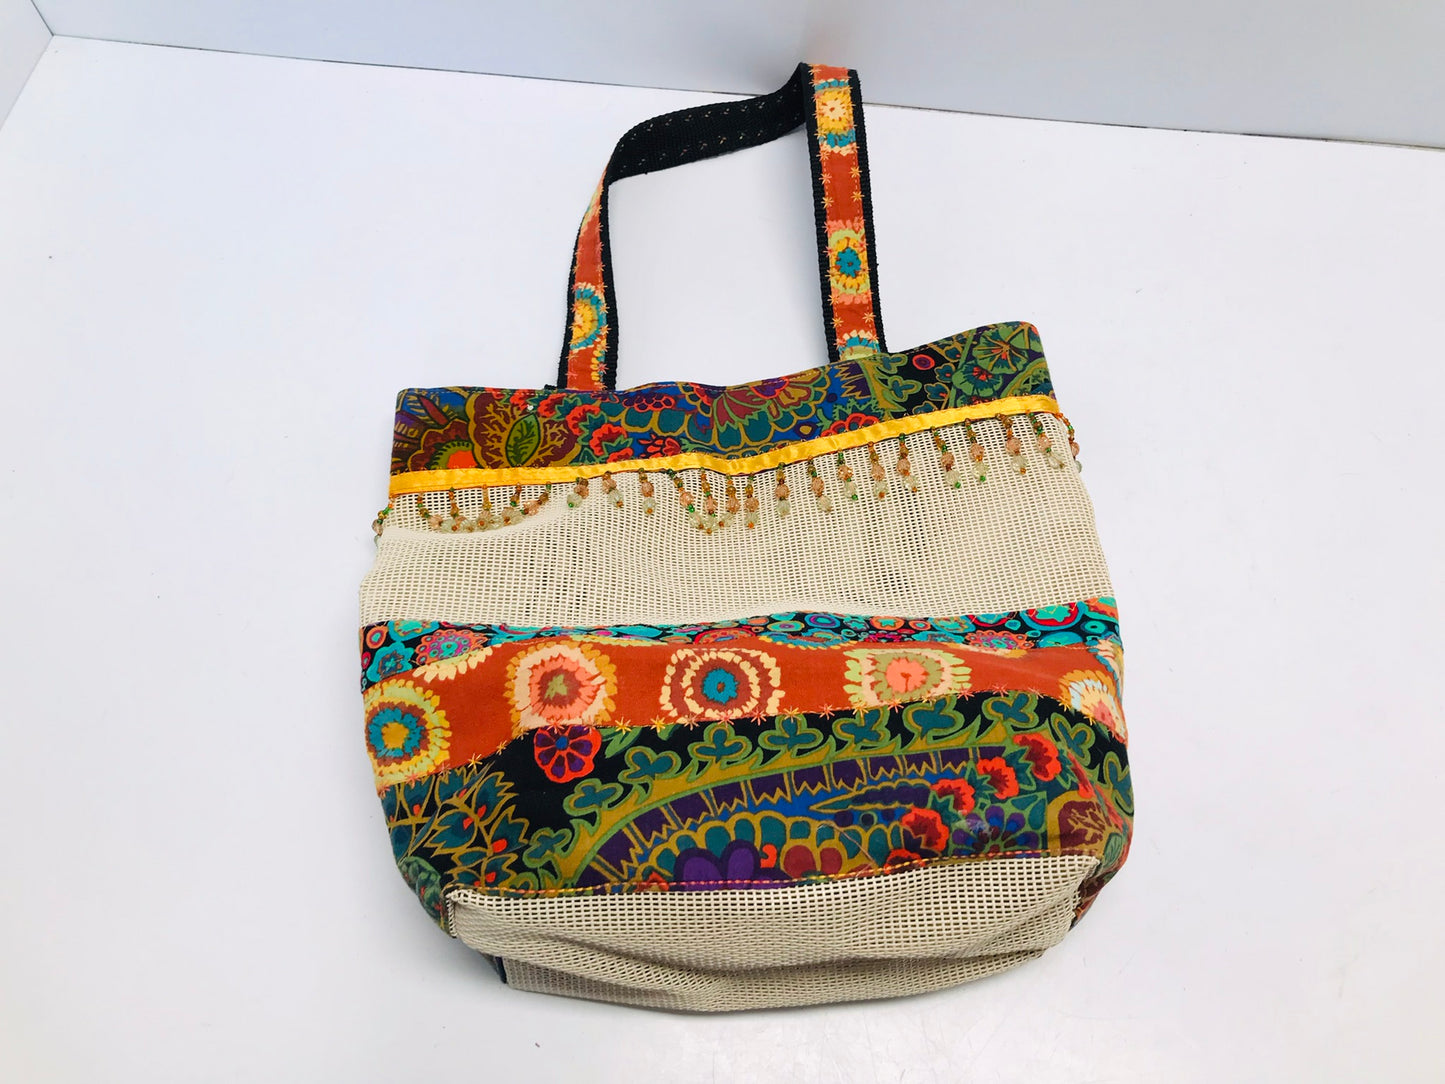 Beaded Shopping Bag 11x11in New Handmade